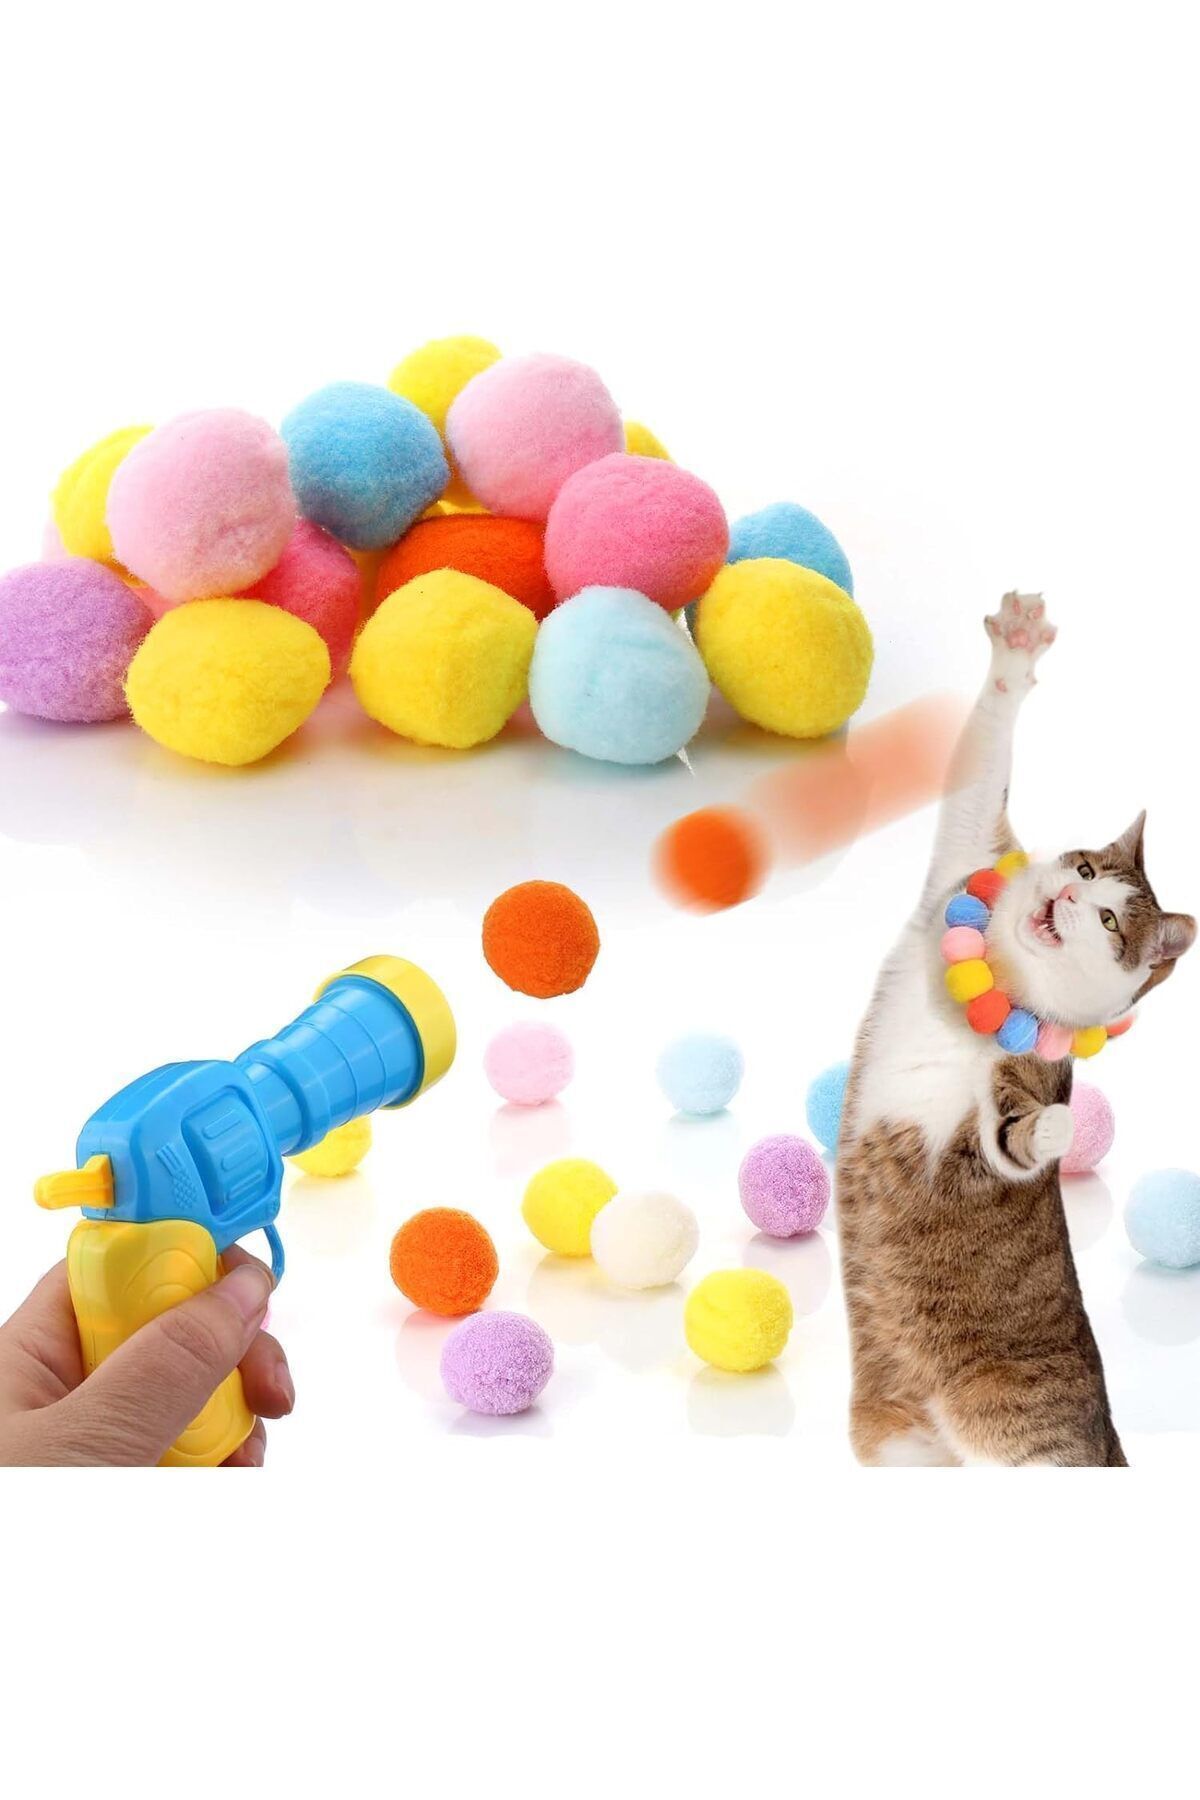 busstier İnteraktif Kedi Oyun Tabancası - Peluş Toplarla Eğlenceli Oyun Zamanı + Ekstra Peluş Toplar